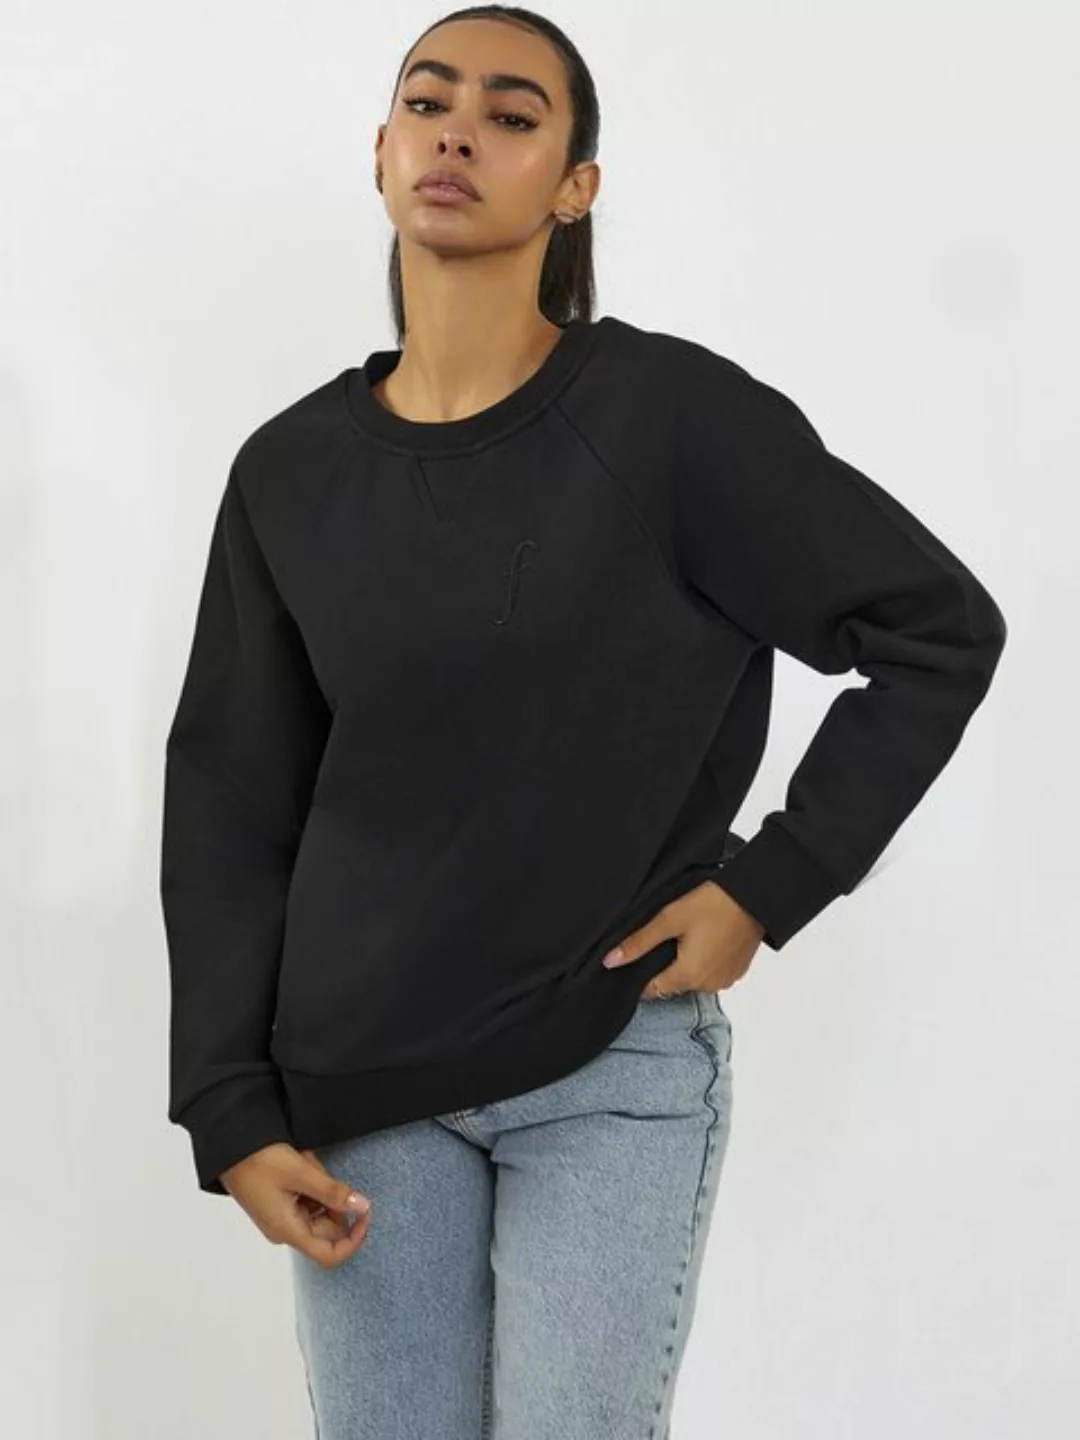 Freshlions Sweatshirt günstig online kaufen